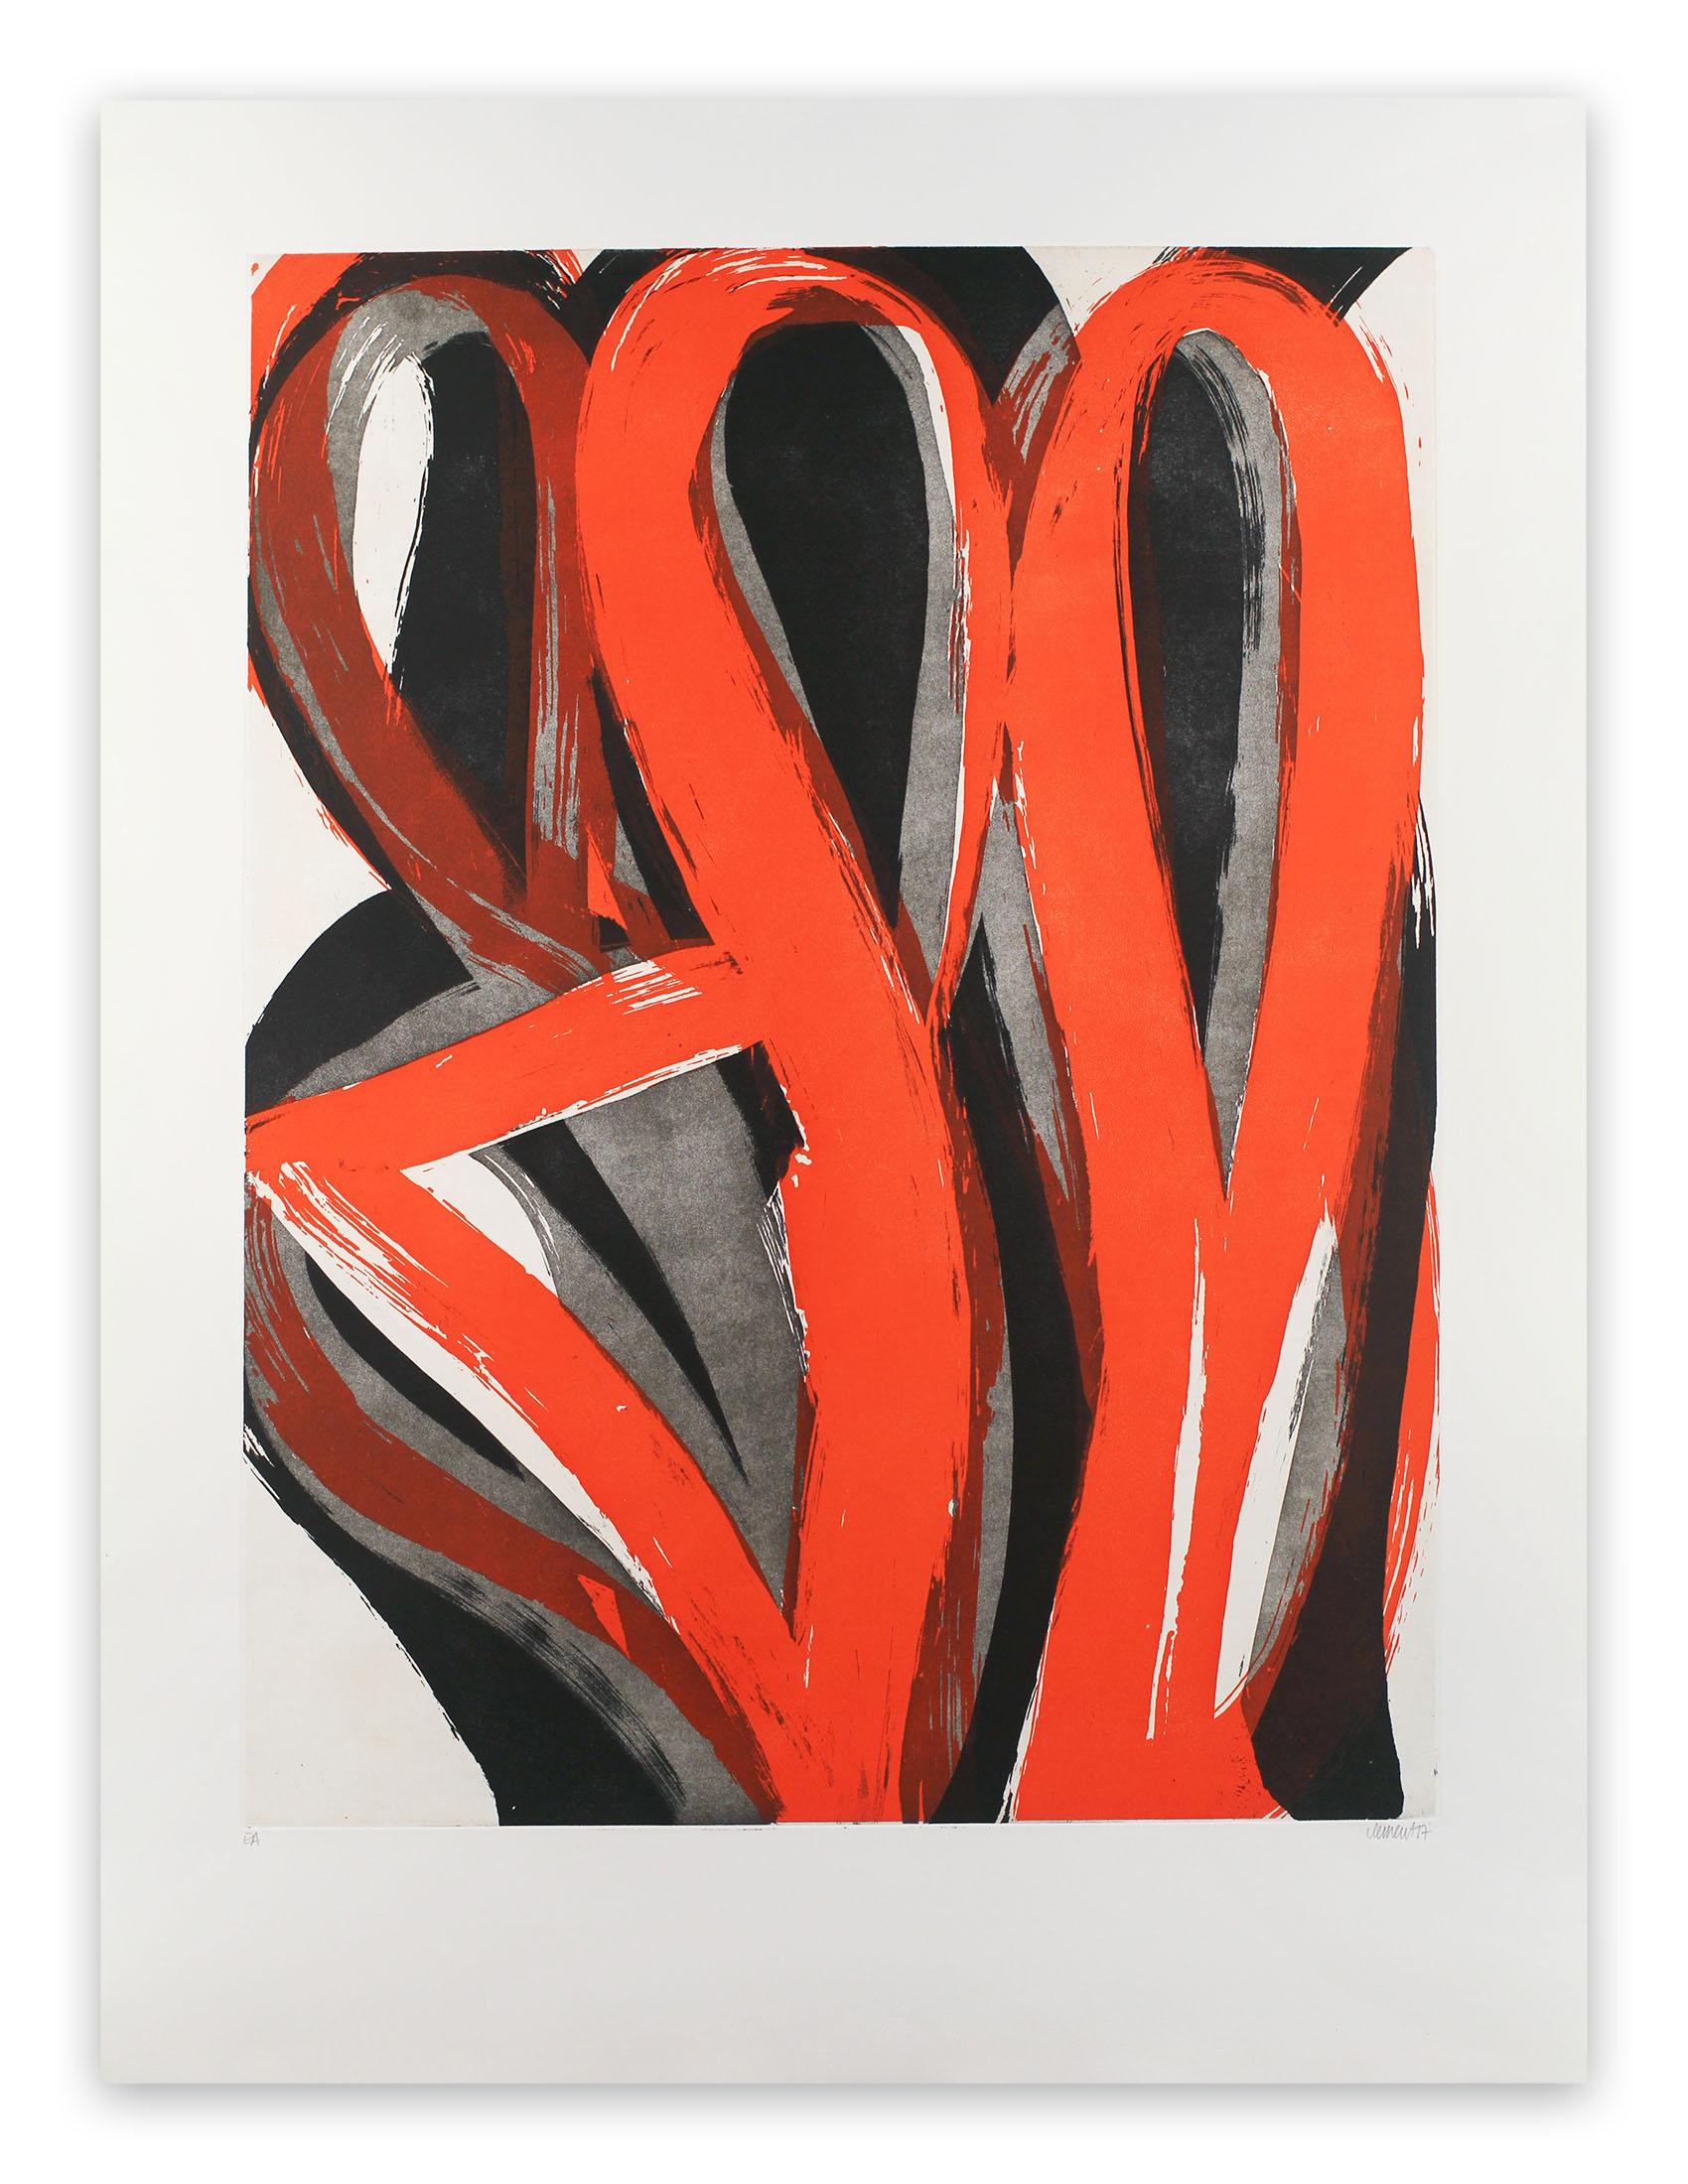 Alain Clément Abstract Print – 17M4G-2017 (Abstrakter Druck)